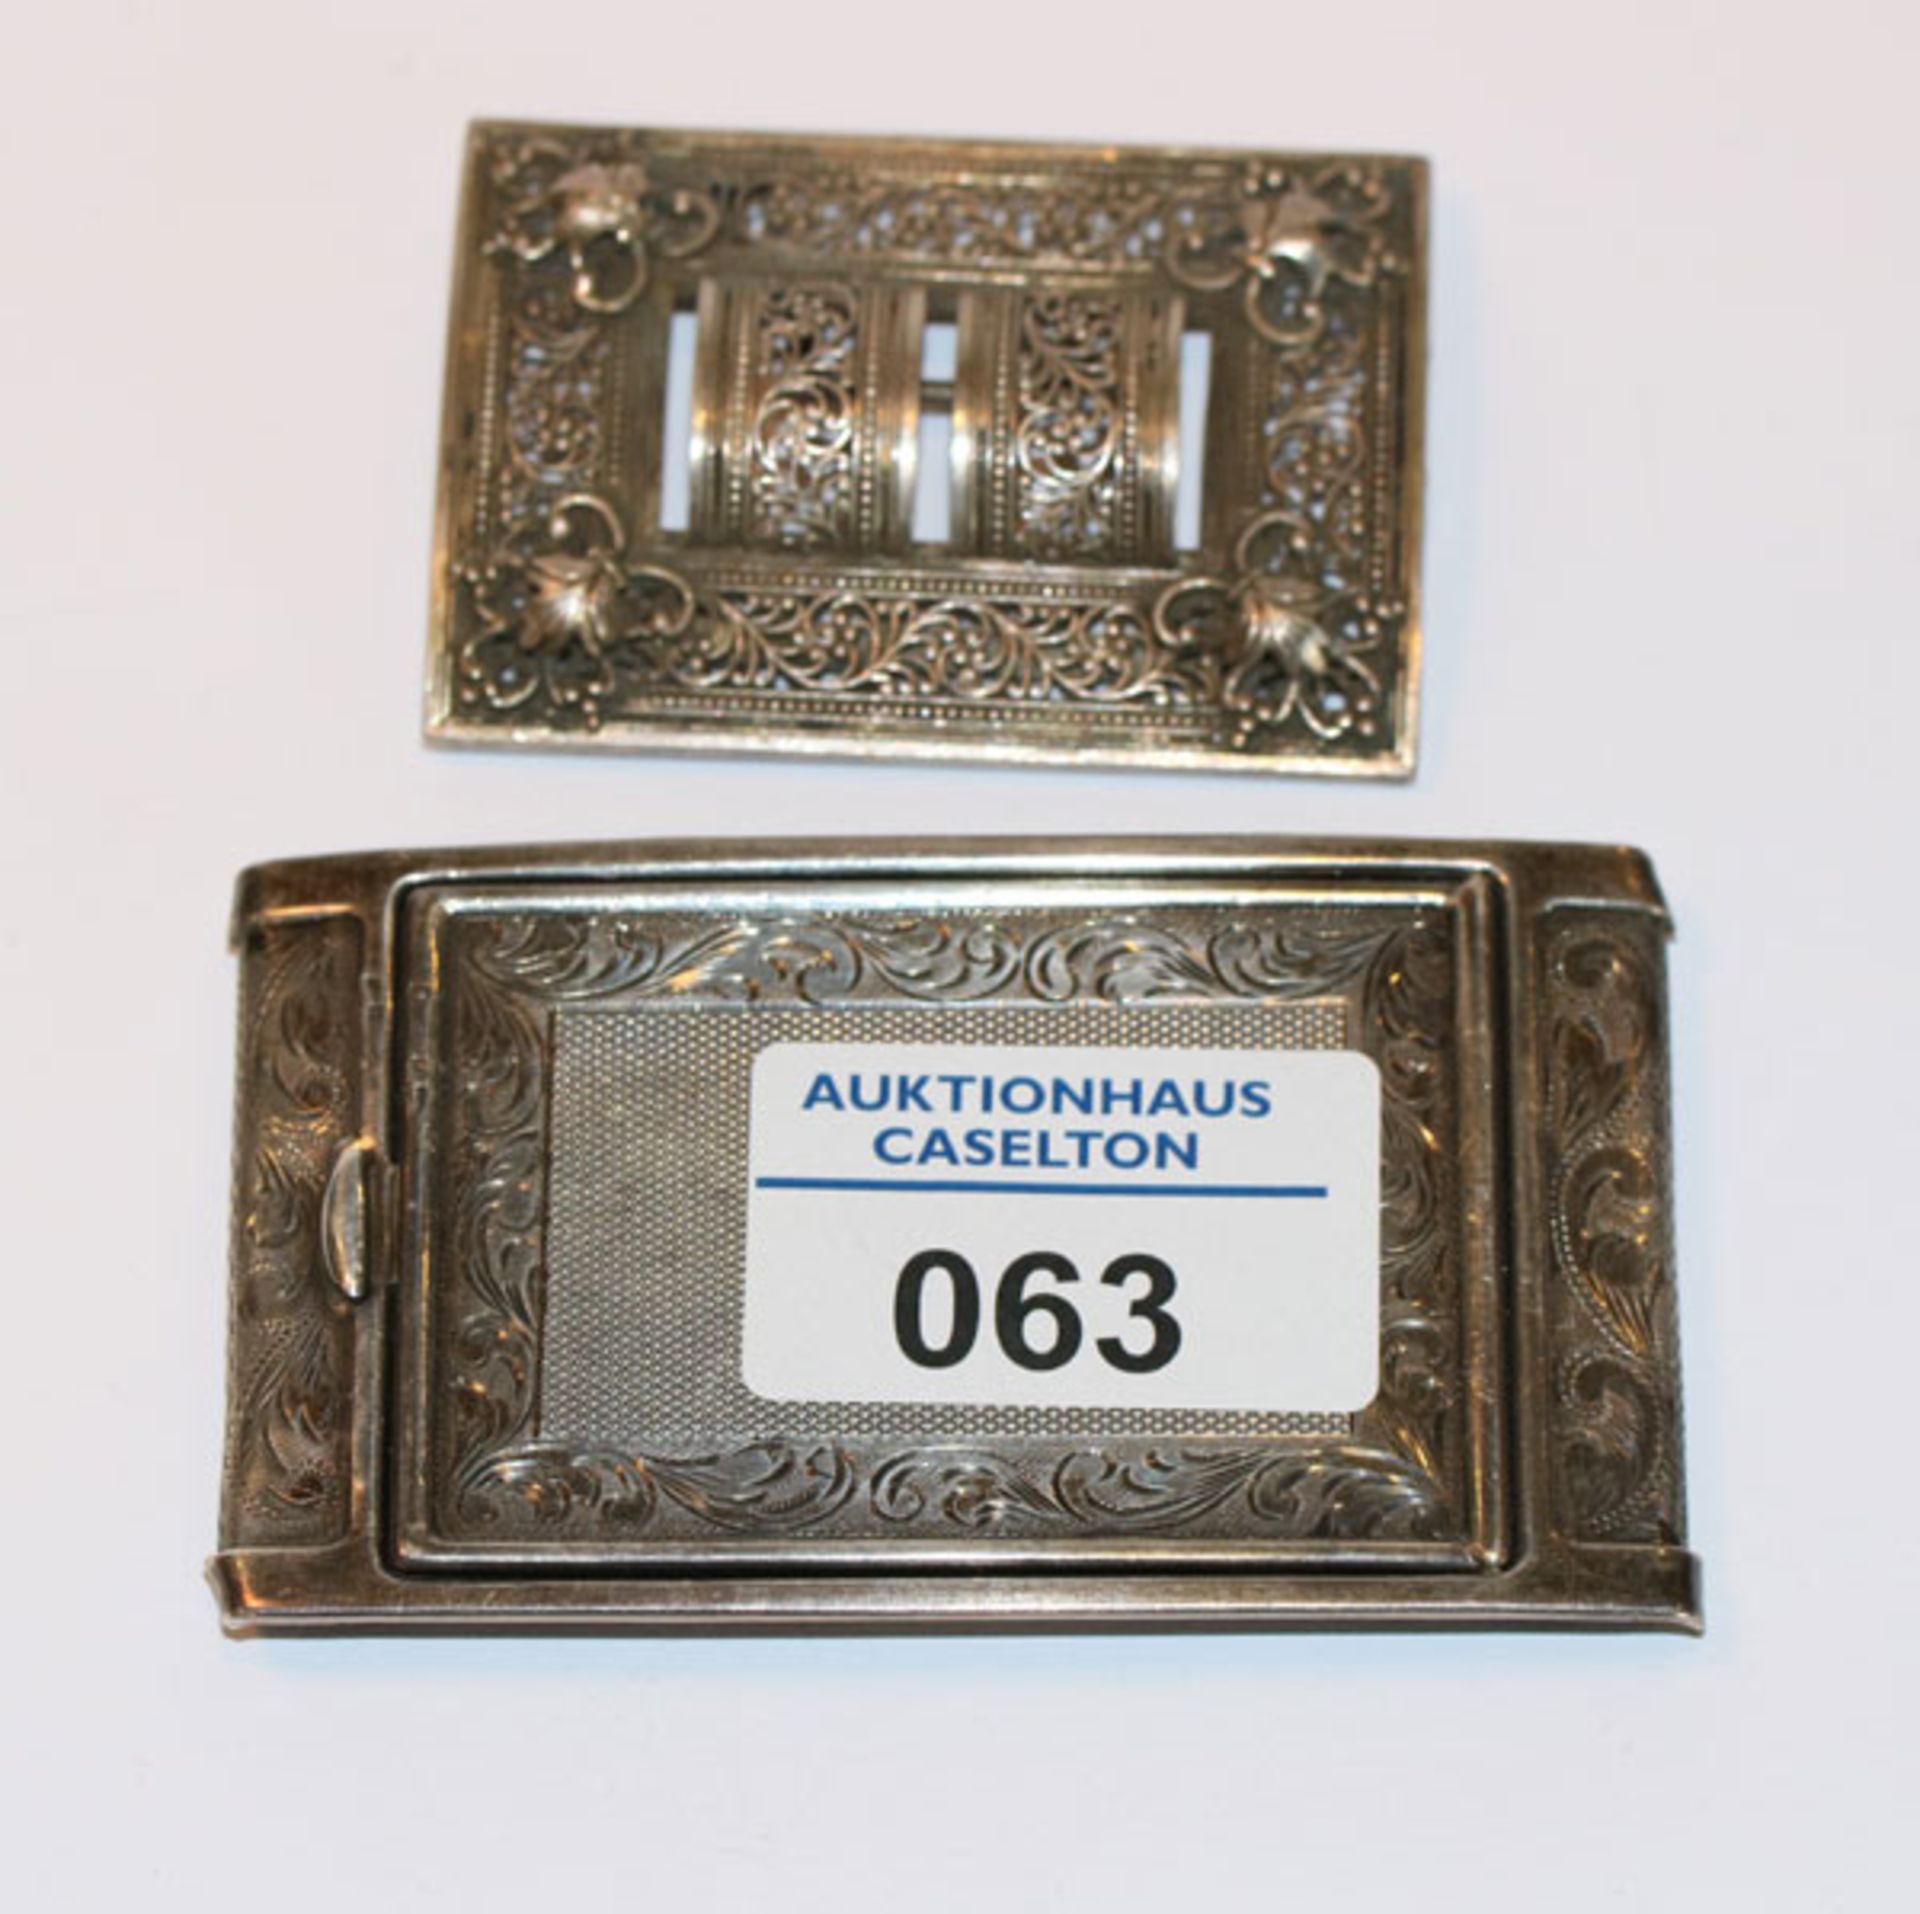 Silber Gürtelschließe, fein graviert, H 5 cm, B 9 cm, und Silber Brosche, H 6 cm, B 4,5 cm, zus.